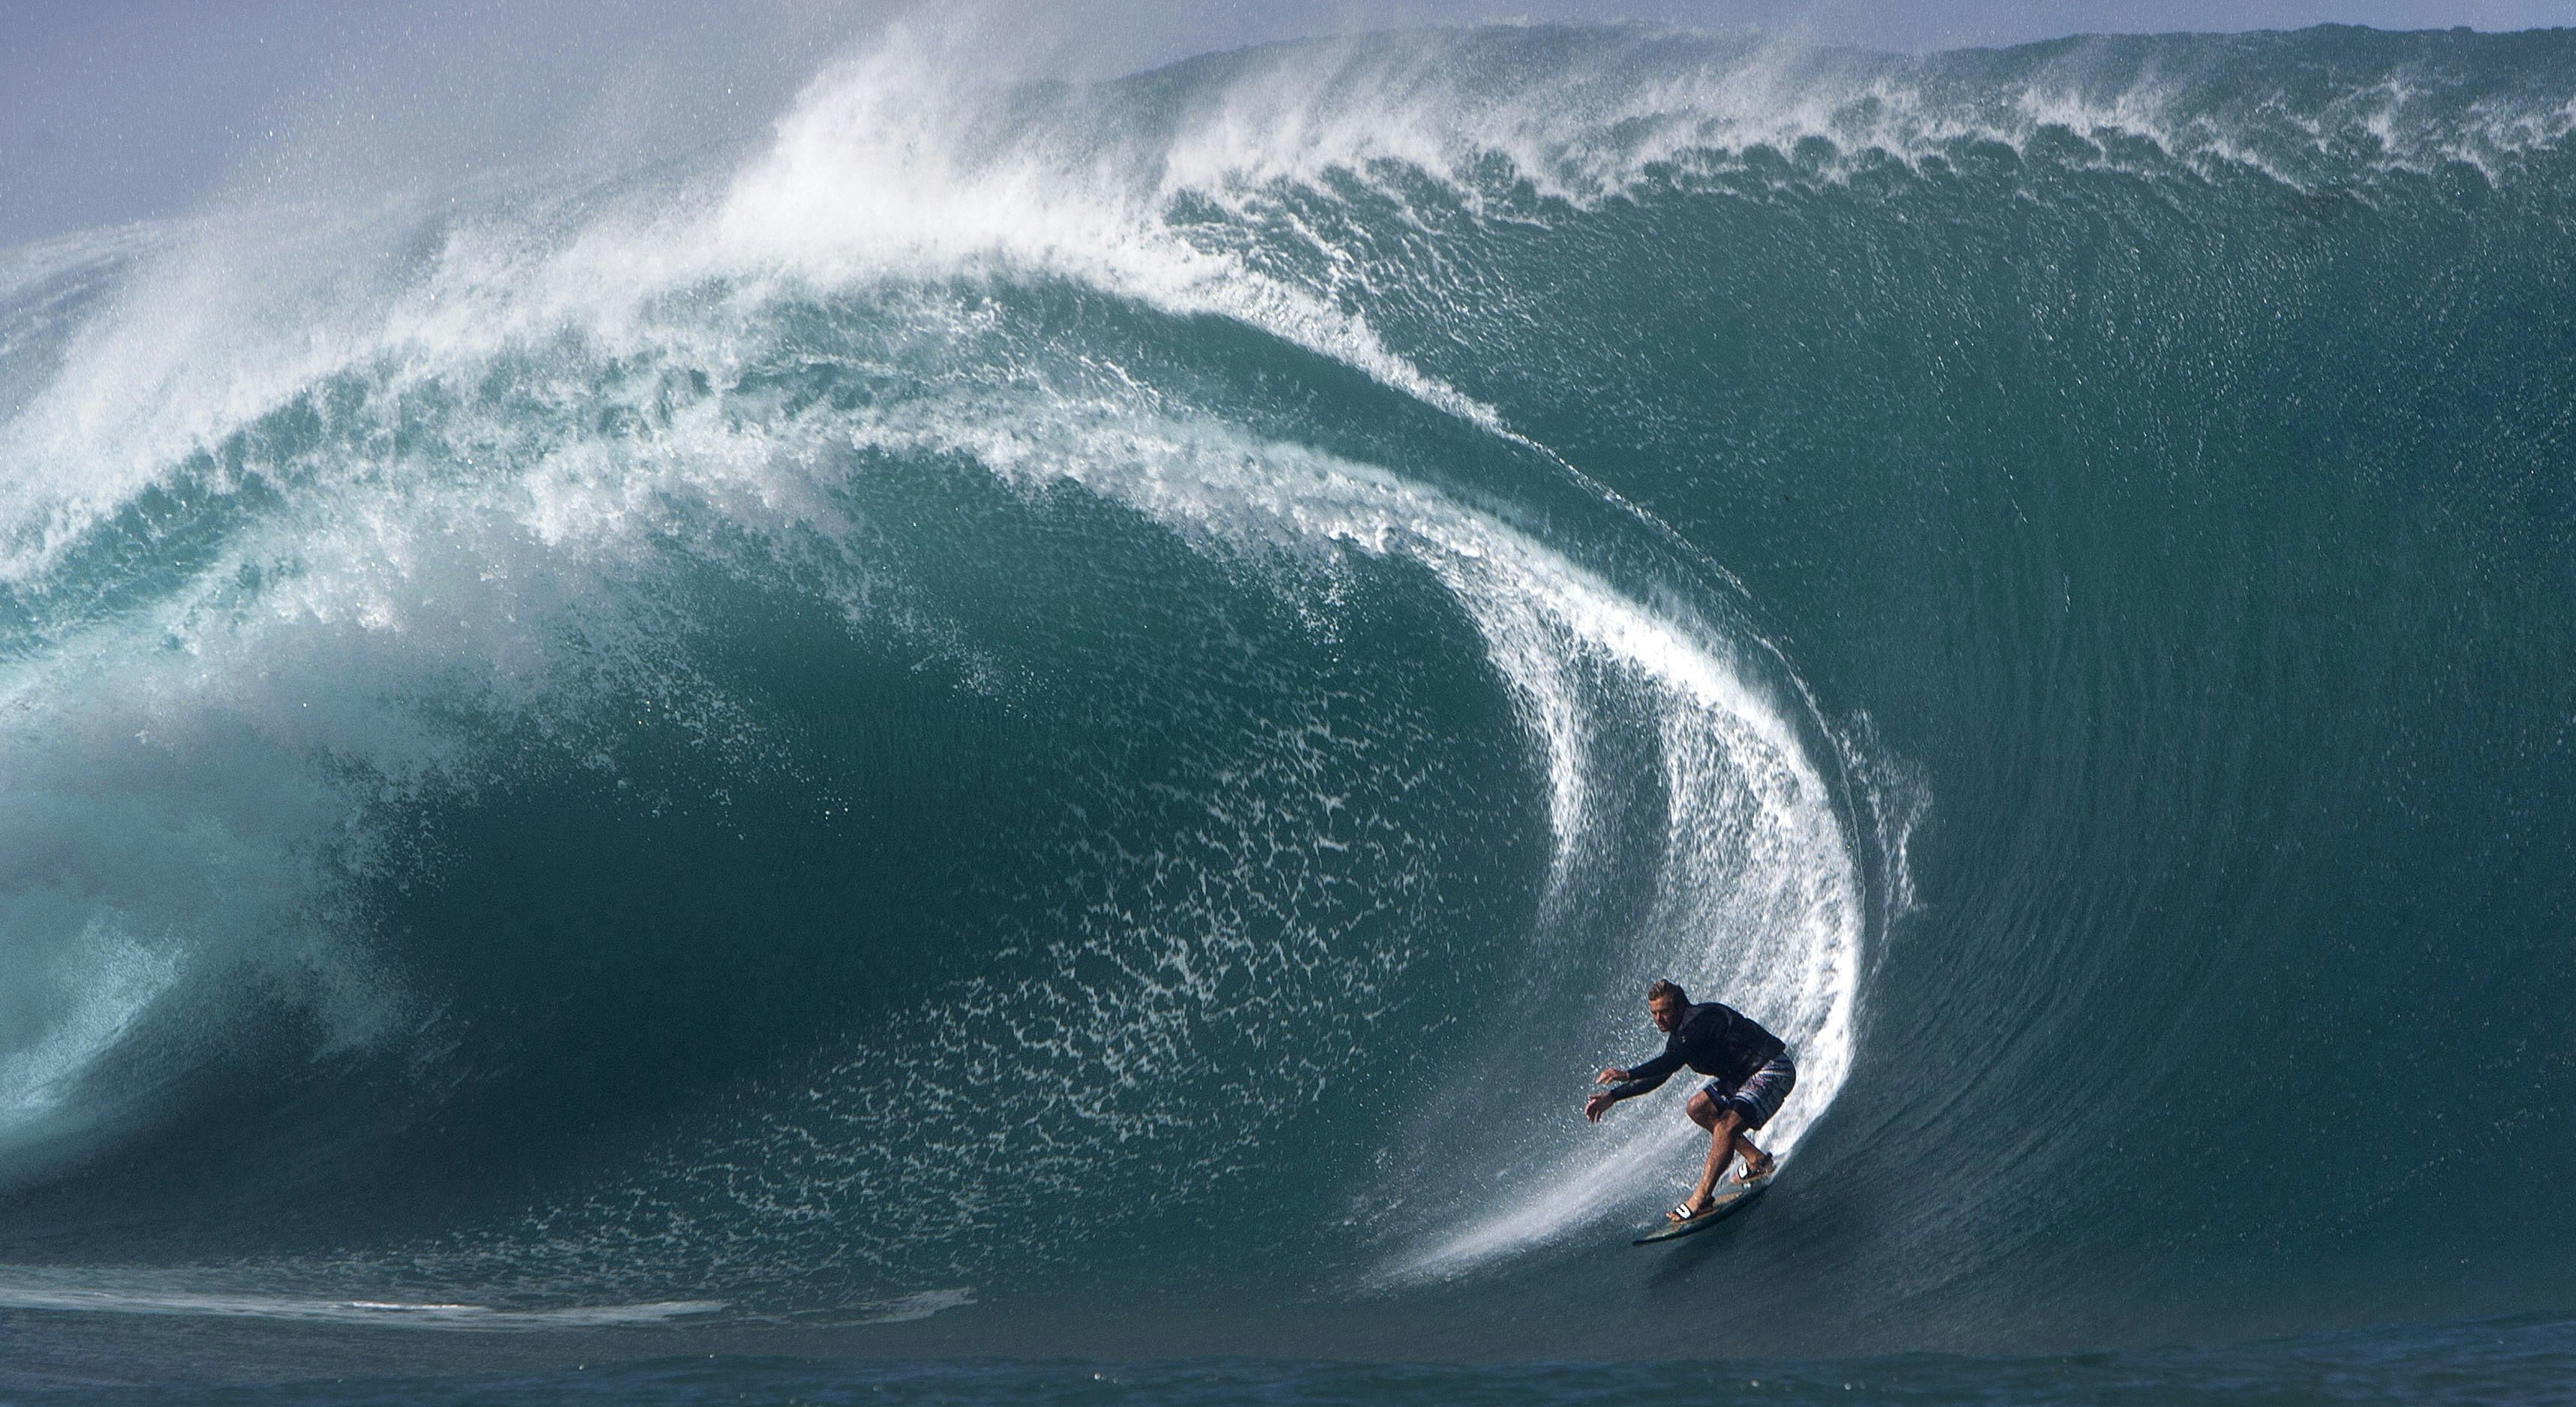 US surfer Laird Hamilton rides a wave at Teahupoo in Tahiti.